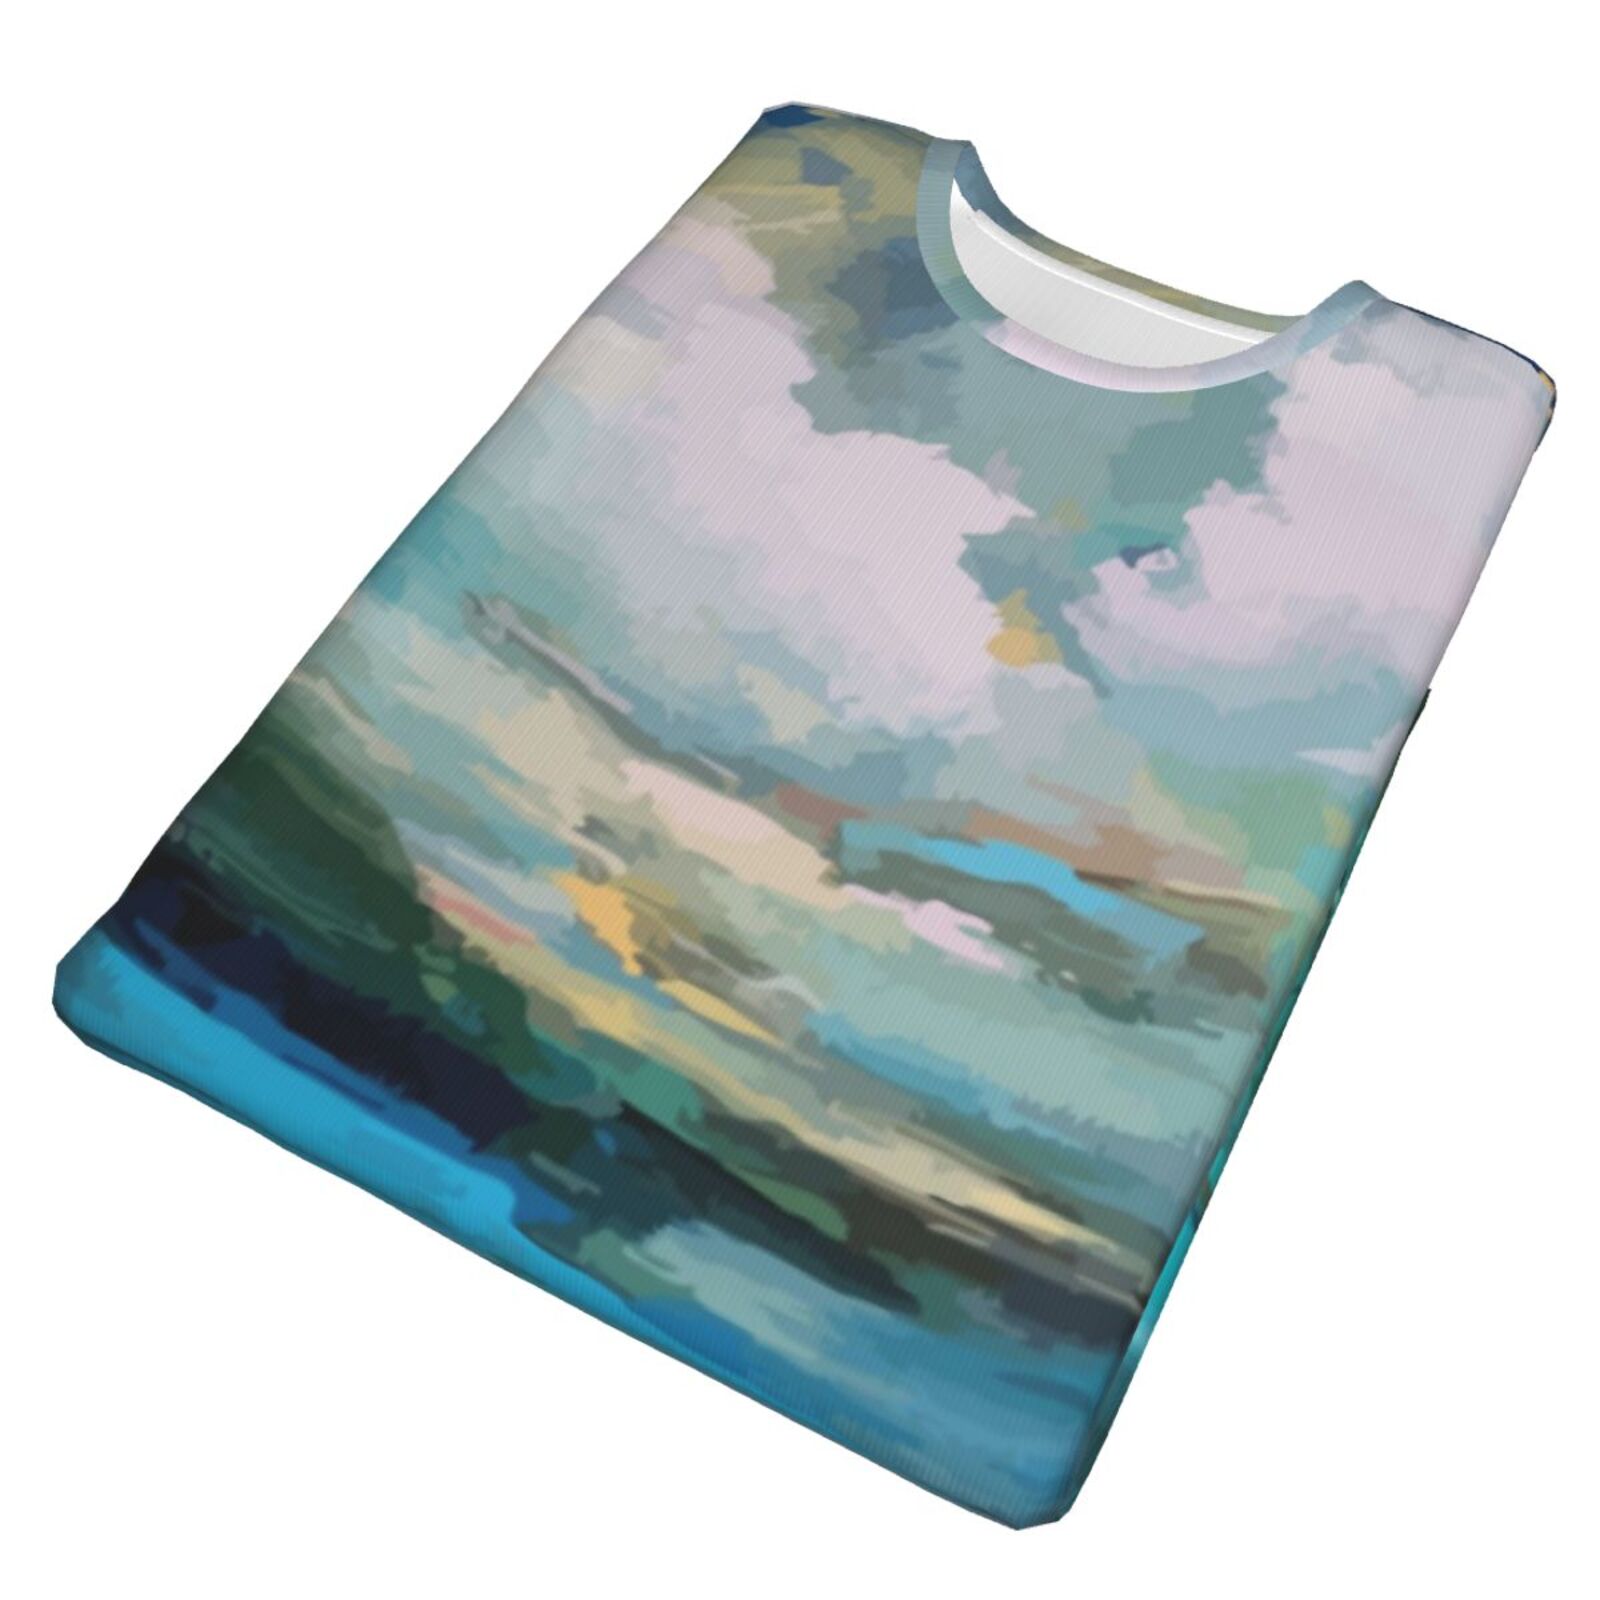 Wolken über dem See Malelemente Klassisch T Shirt